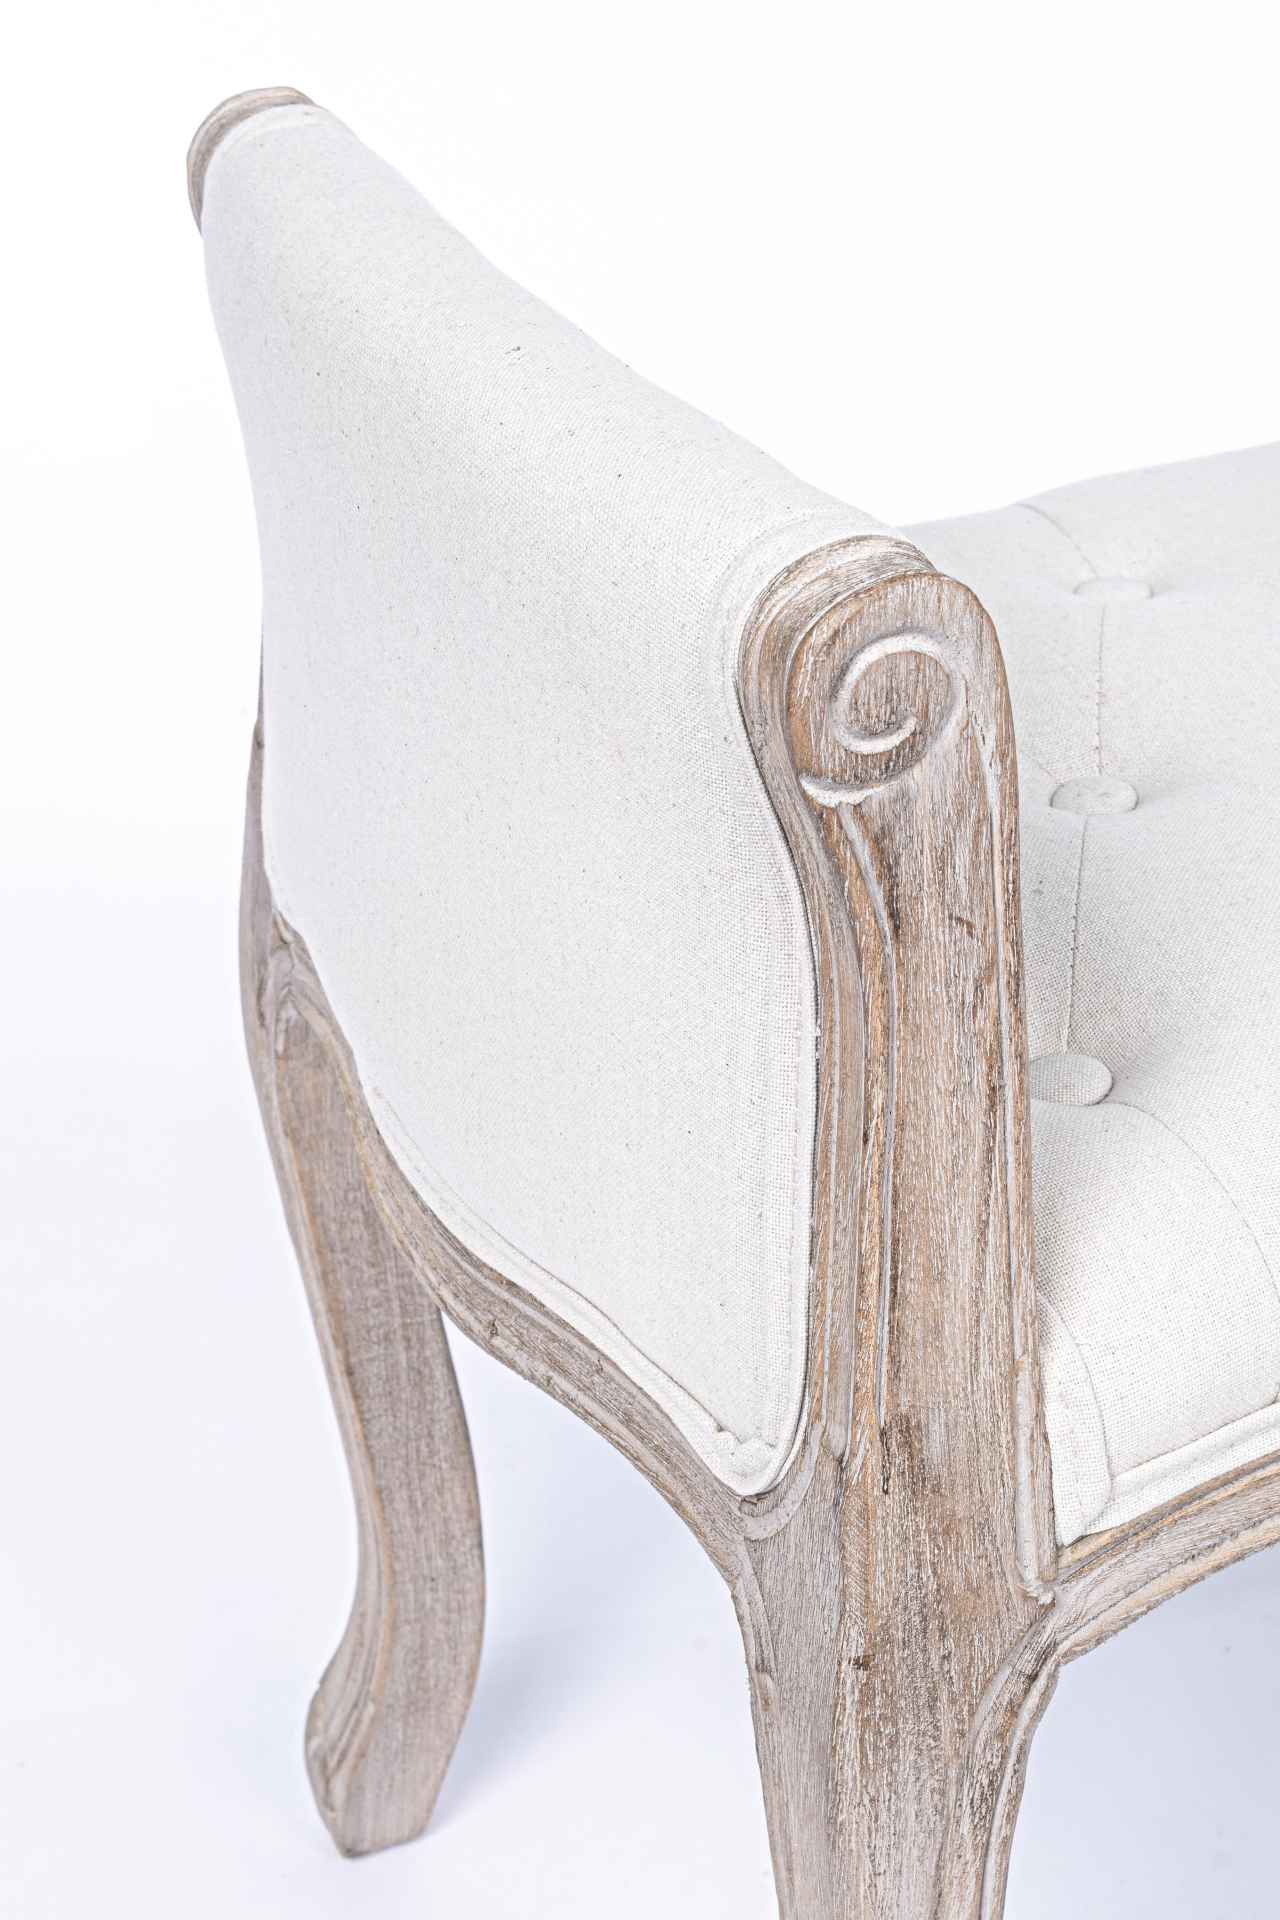 Die Bank Diva überzeugt mit ihrem klassischem Design. Gefertigt wurde die Bank aus einem Stoff-Bezug welcher aus einem Mix aus Baumwolle und Leinen ist, dieser hat einen weißen Farbton. Das Gestell ist aus Holz und ist natürlich gehalten. Die Sitzhöhe bet